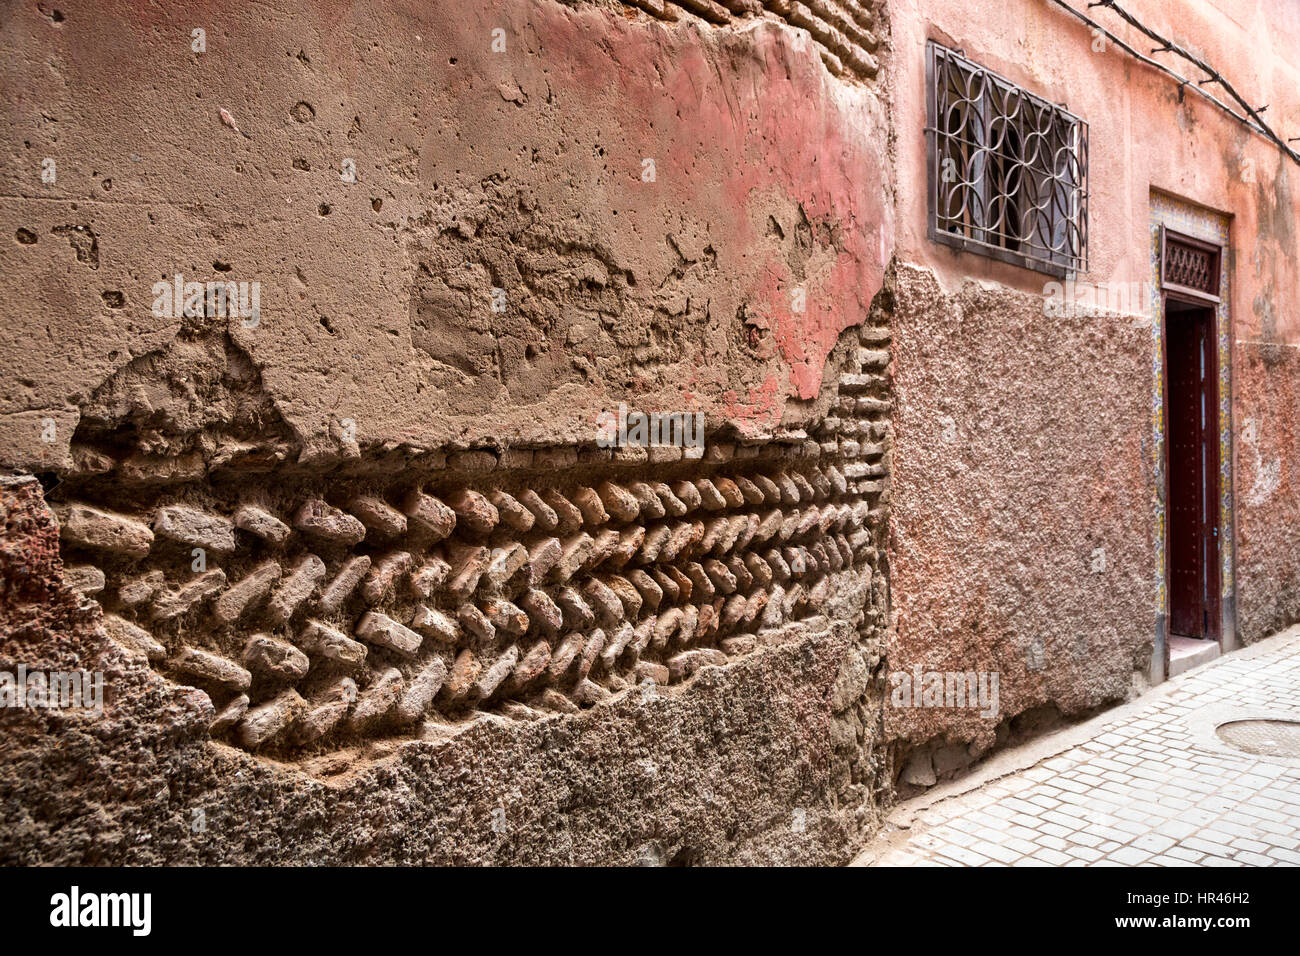 Marrakech, Maroc. Plâtre manquants révèle la technique de brique de boue sur l'ancien bâtiment. Banque D'Images